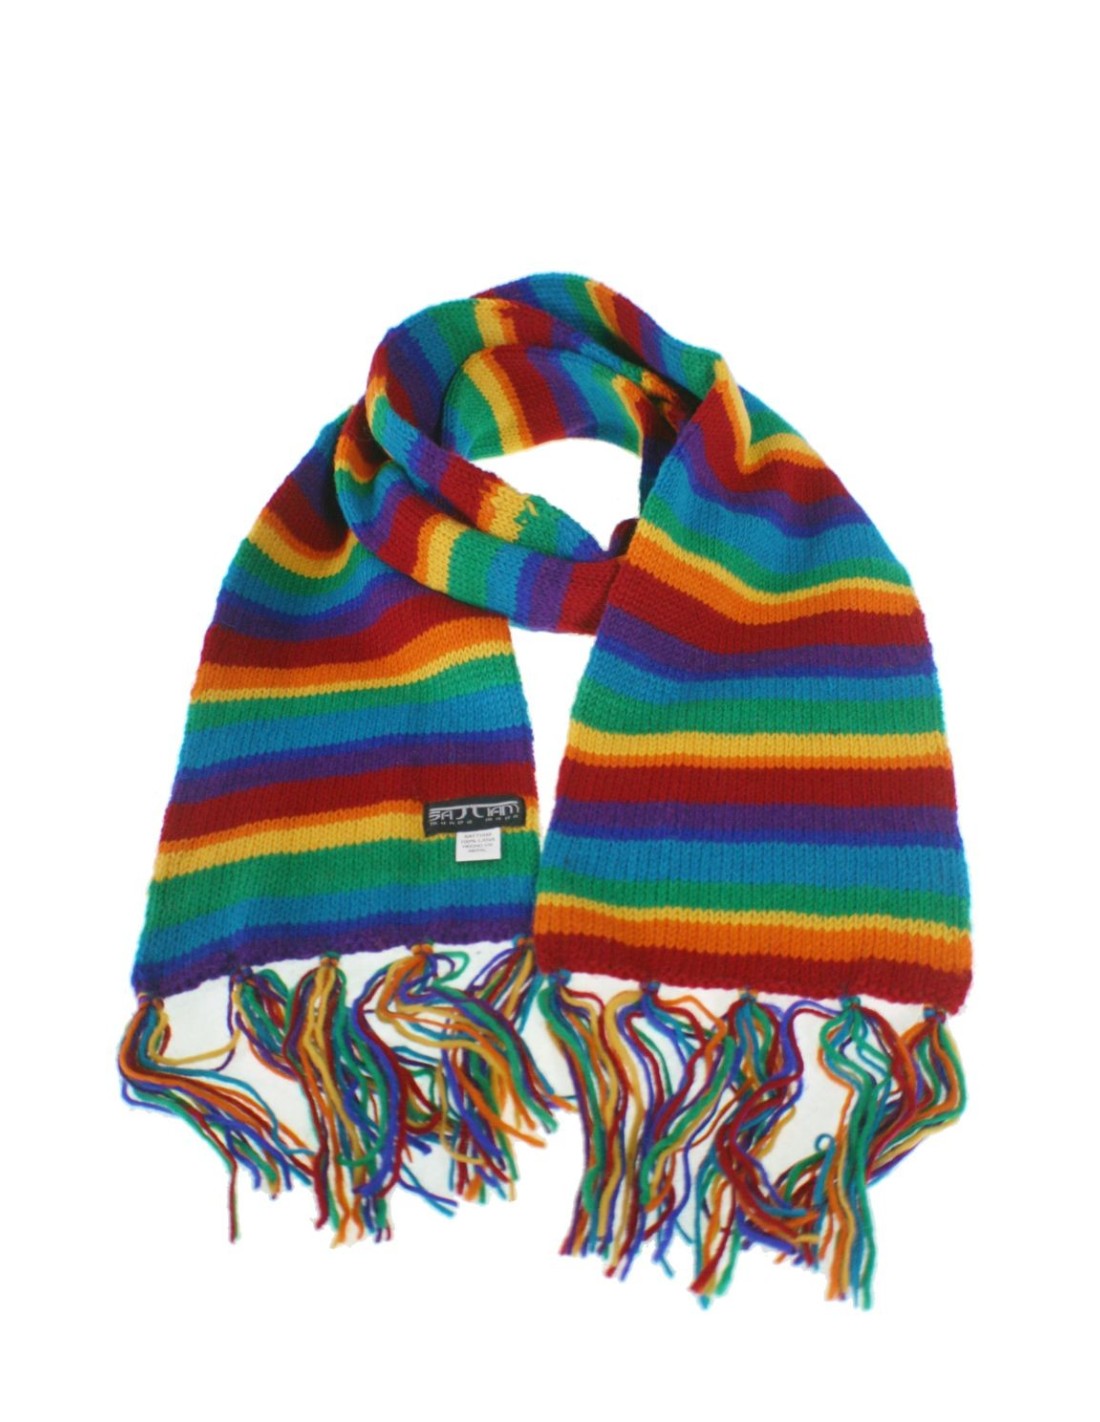 Detectable Práctico Teseo Bufanda de lana doble invierno unisex color arcoíris regalo original